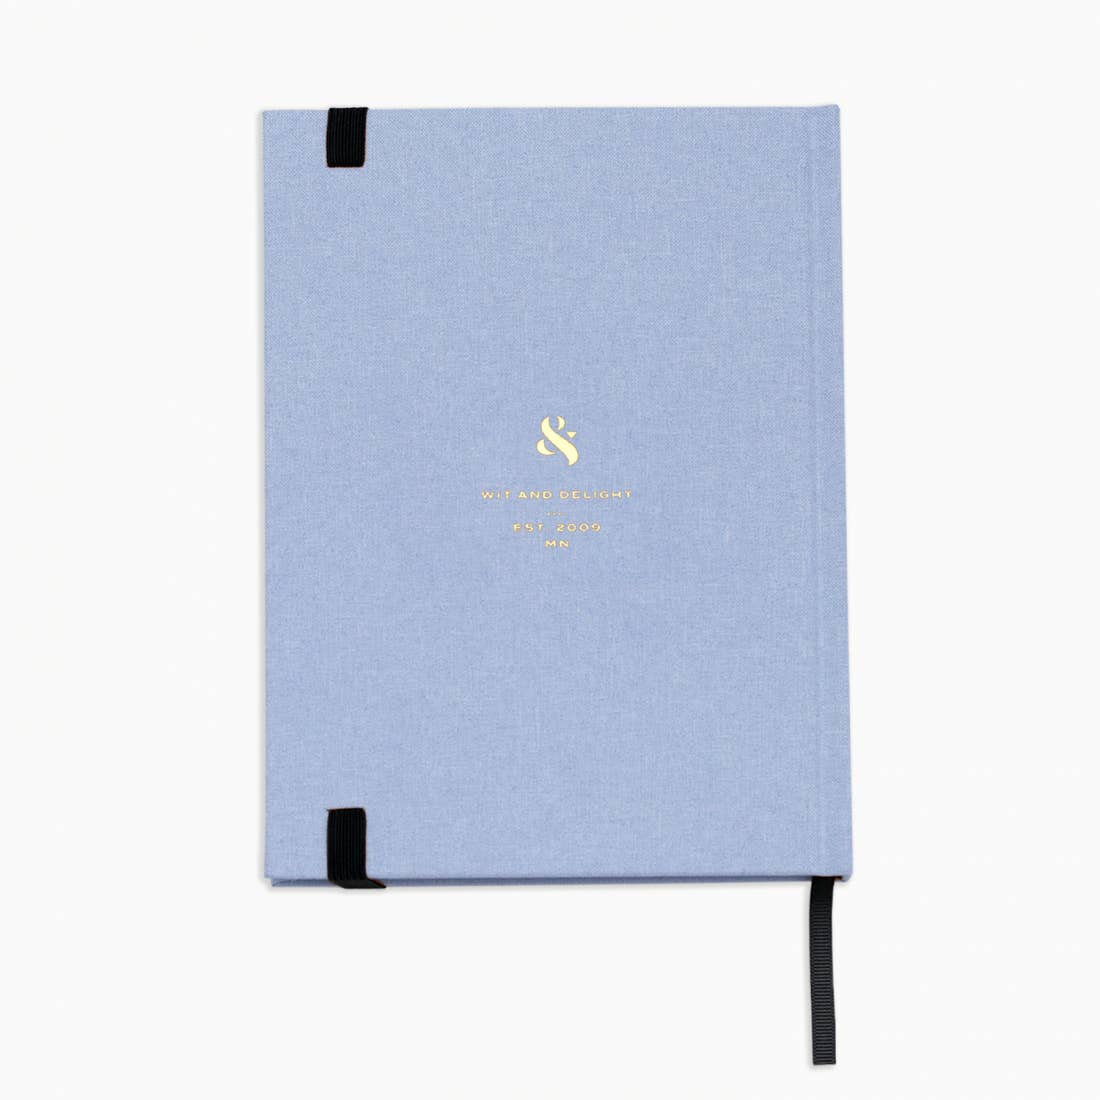 Light Blue Linen Note to Self Journal